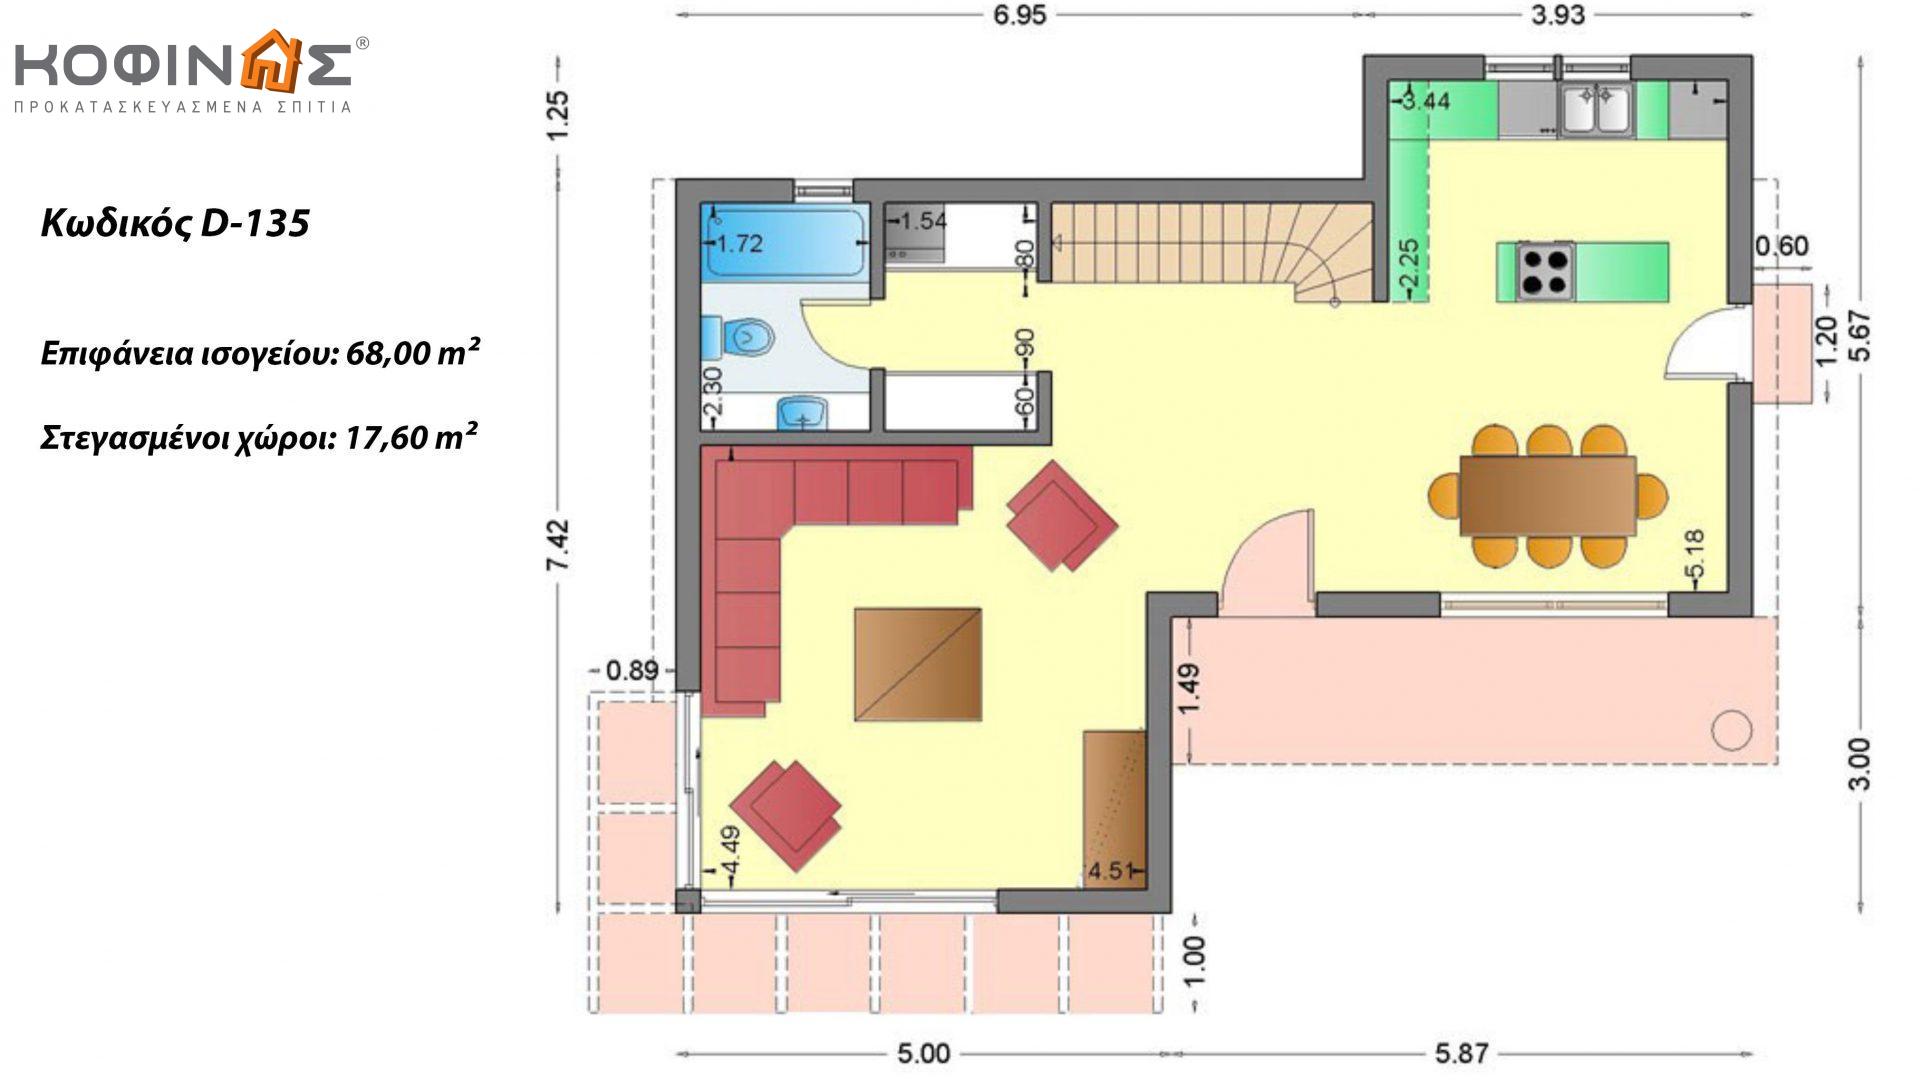 Διώροφη Κατοικία D-135, συνολικής επιφάνειας 135,20 τ.μ., συνολική επιφάνεια στεγασμένων χώρων 17.60 τ.μ., μπαλκόνια 12.41 τ.μ.